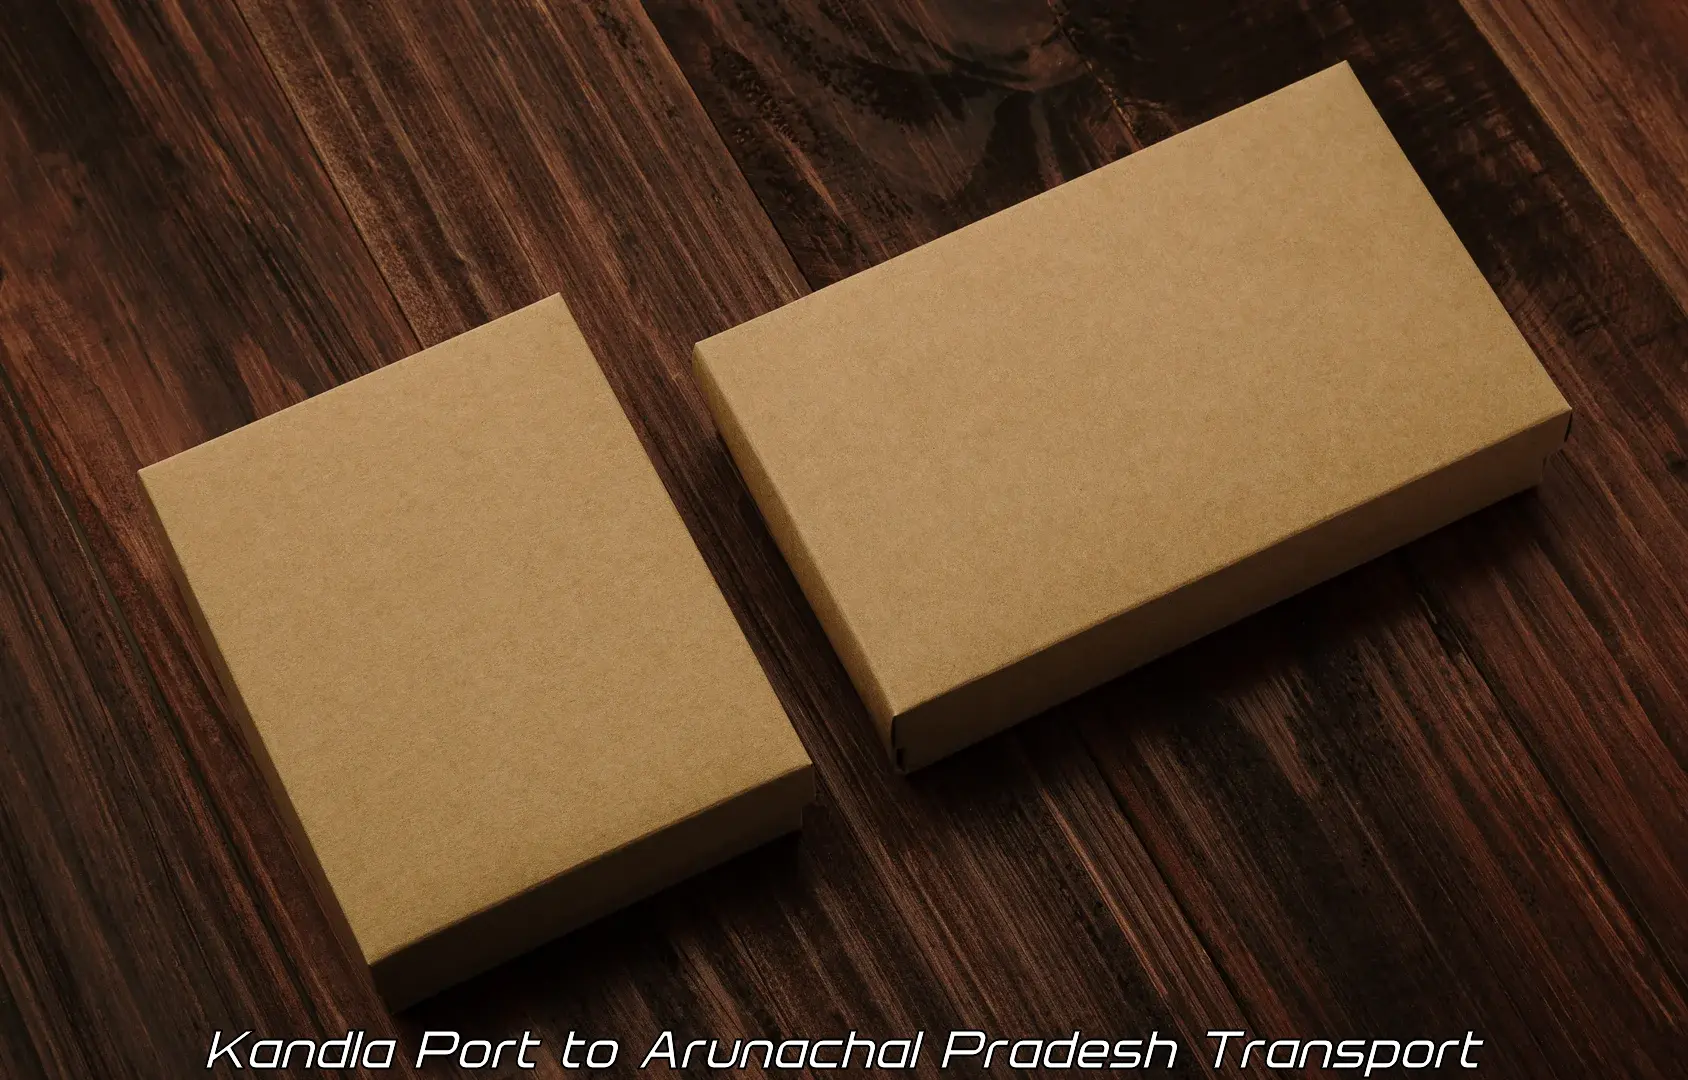 Vehicle courier services Kandla Port to Arunachal Pradesh